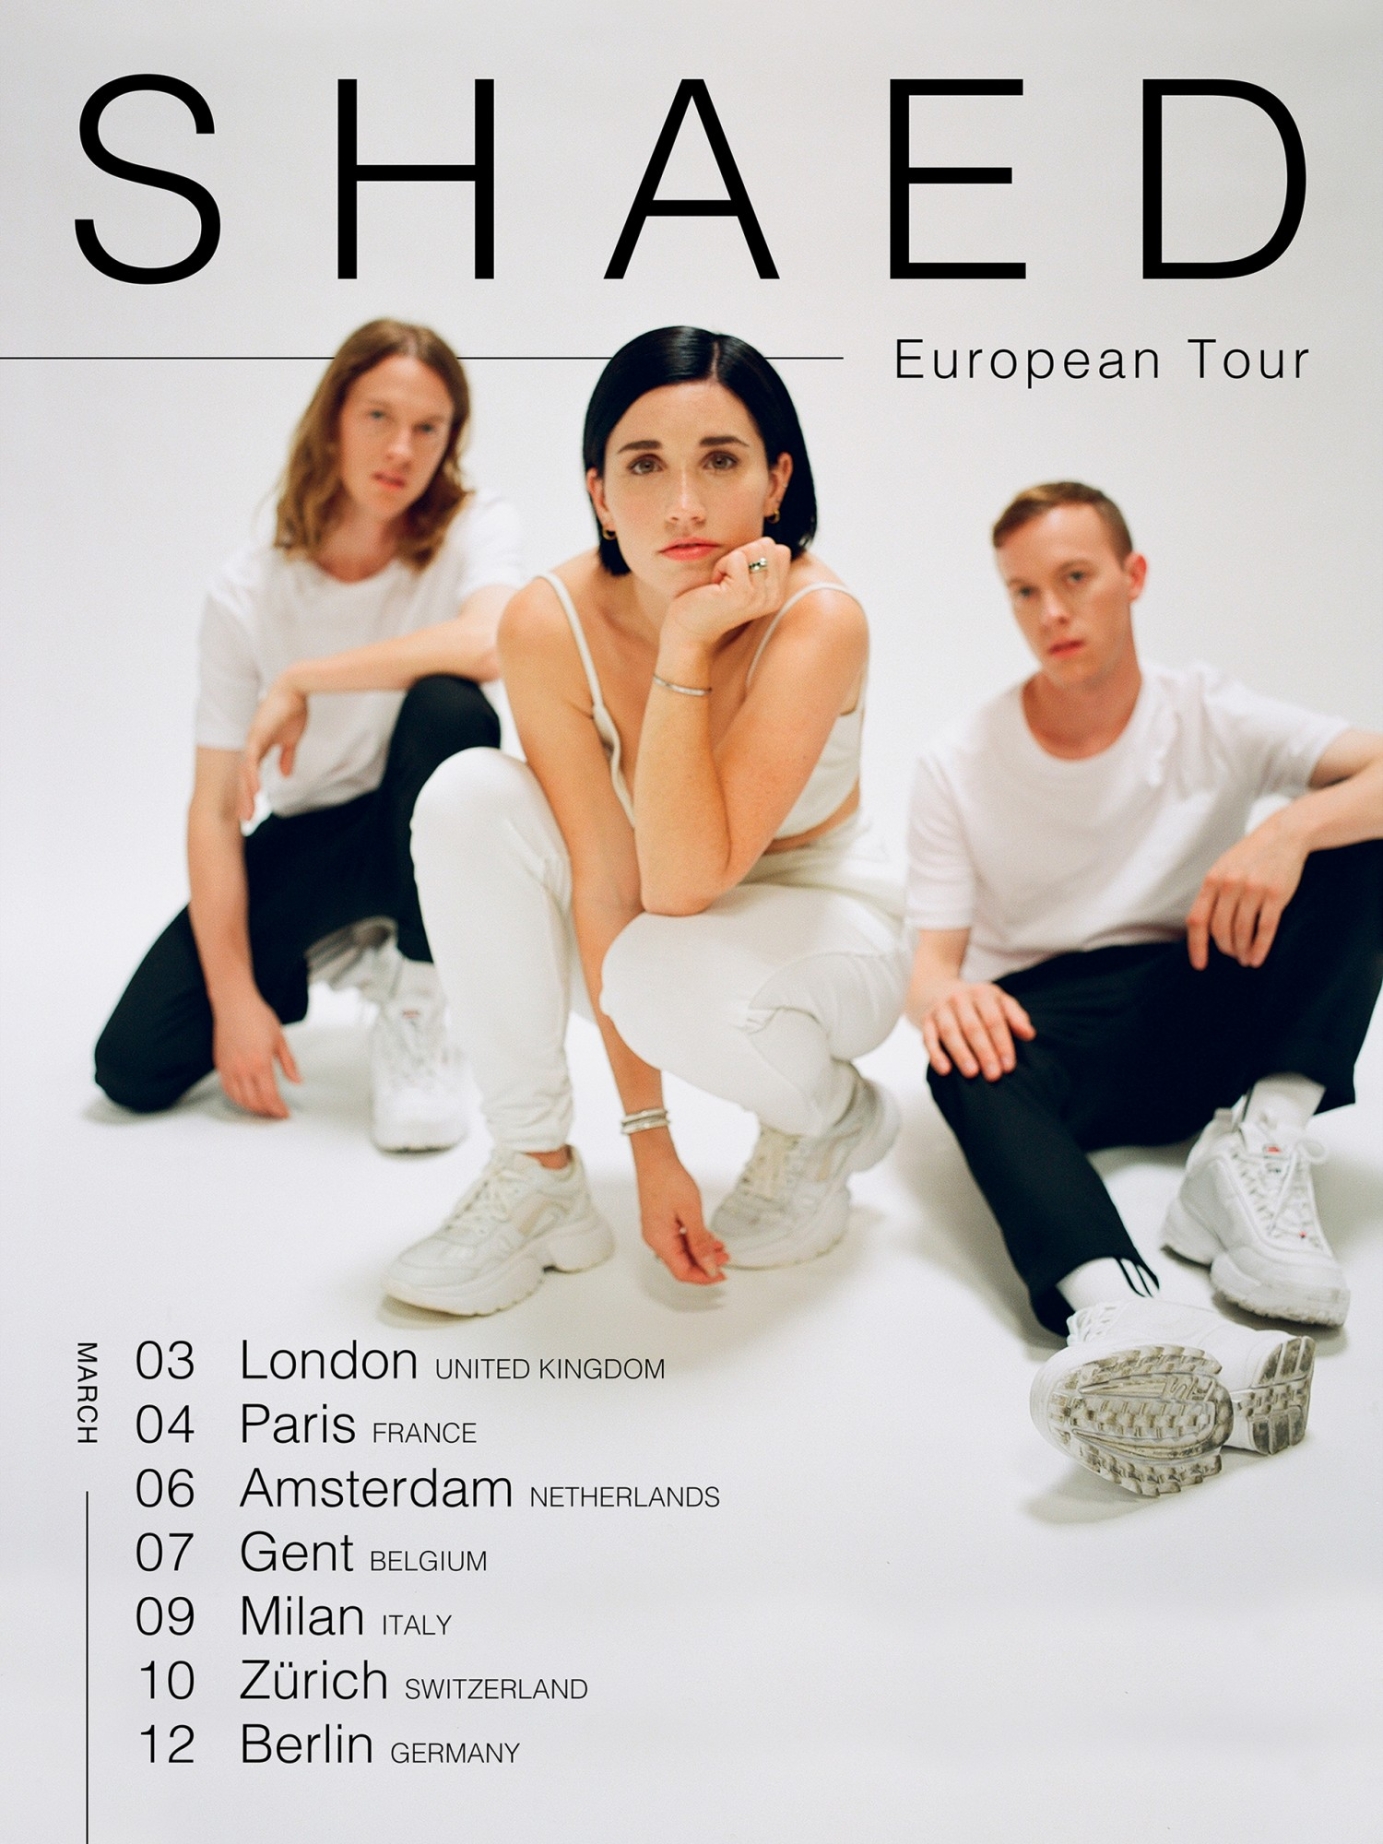 SHAED European Tour Poster